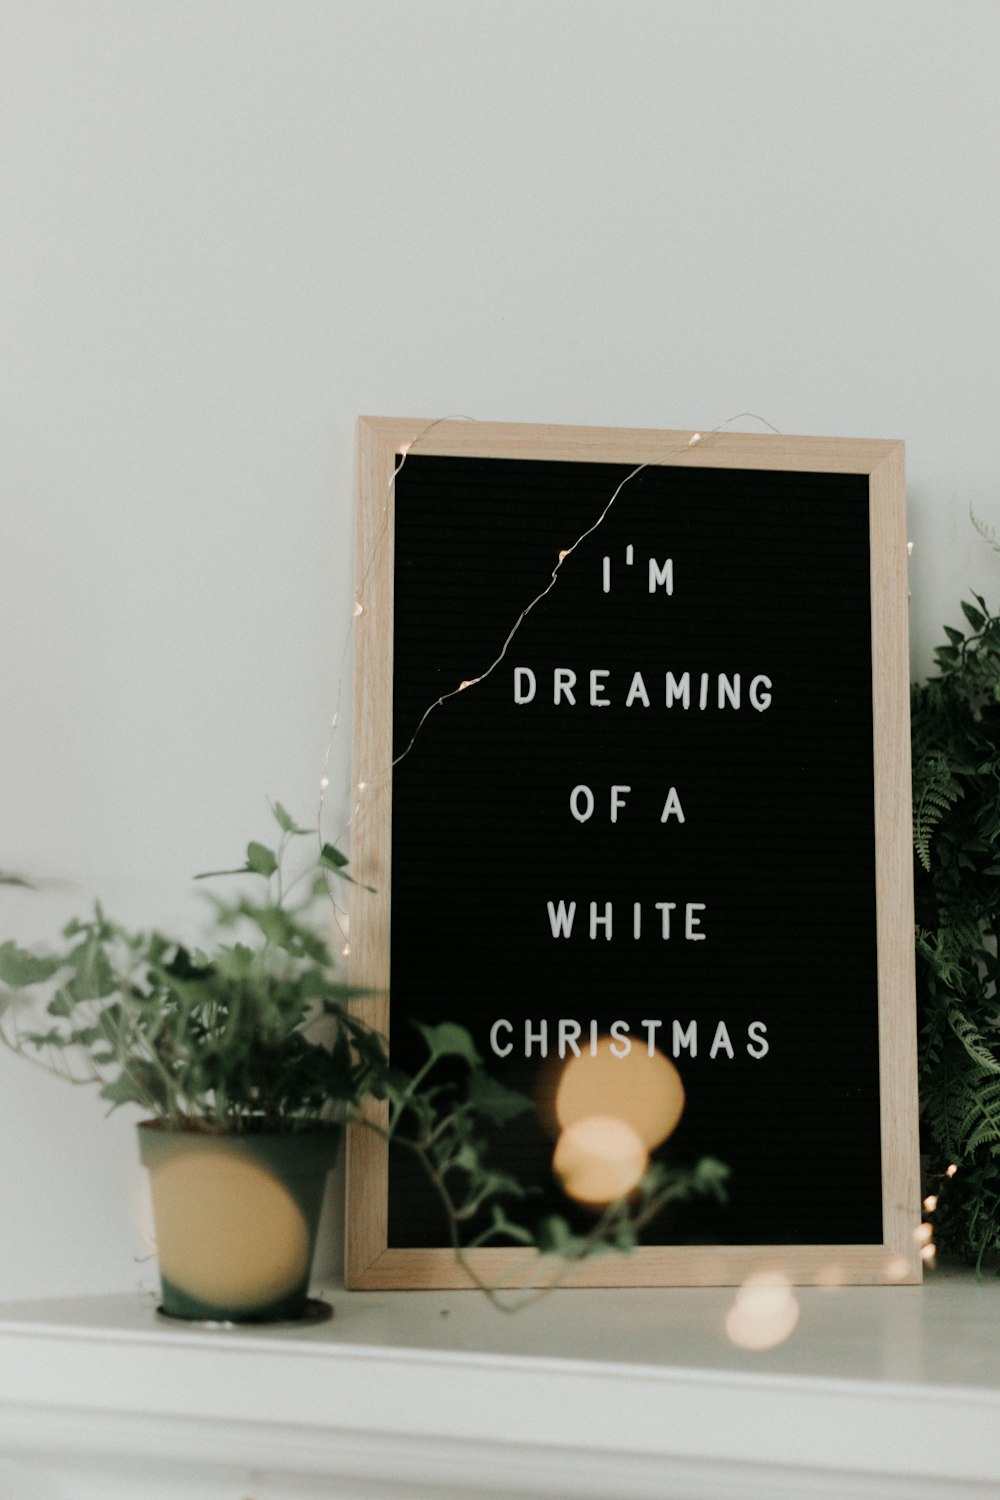 Sto sognando una citazione di Natale bianca